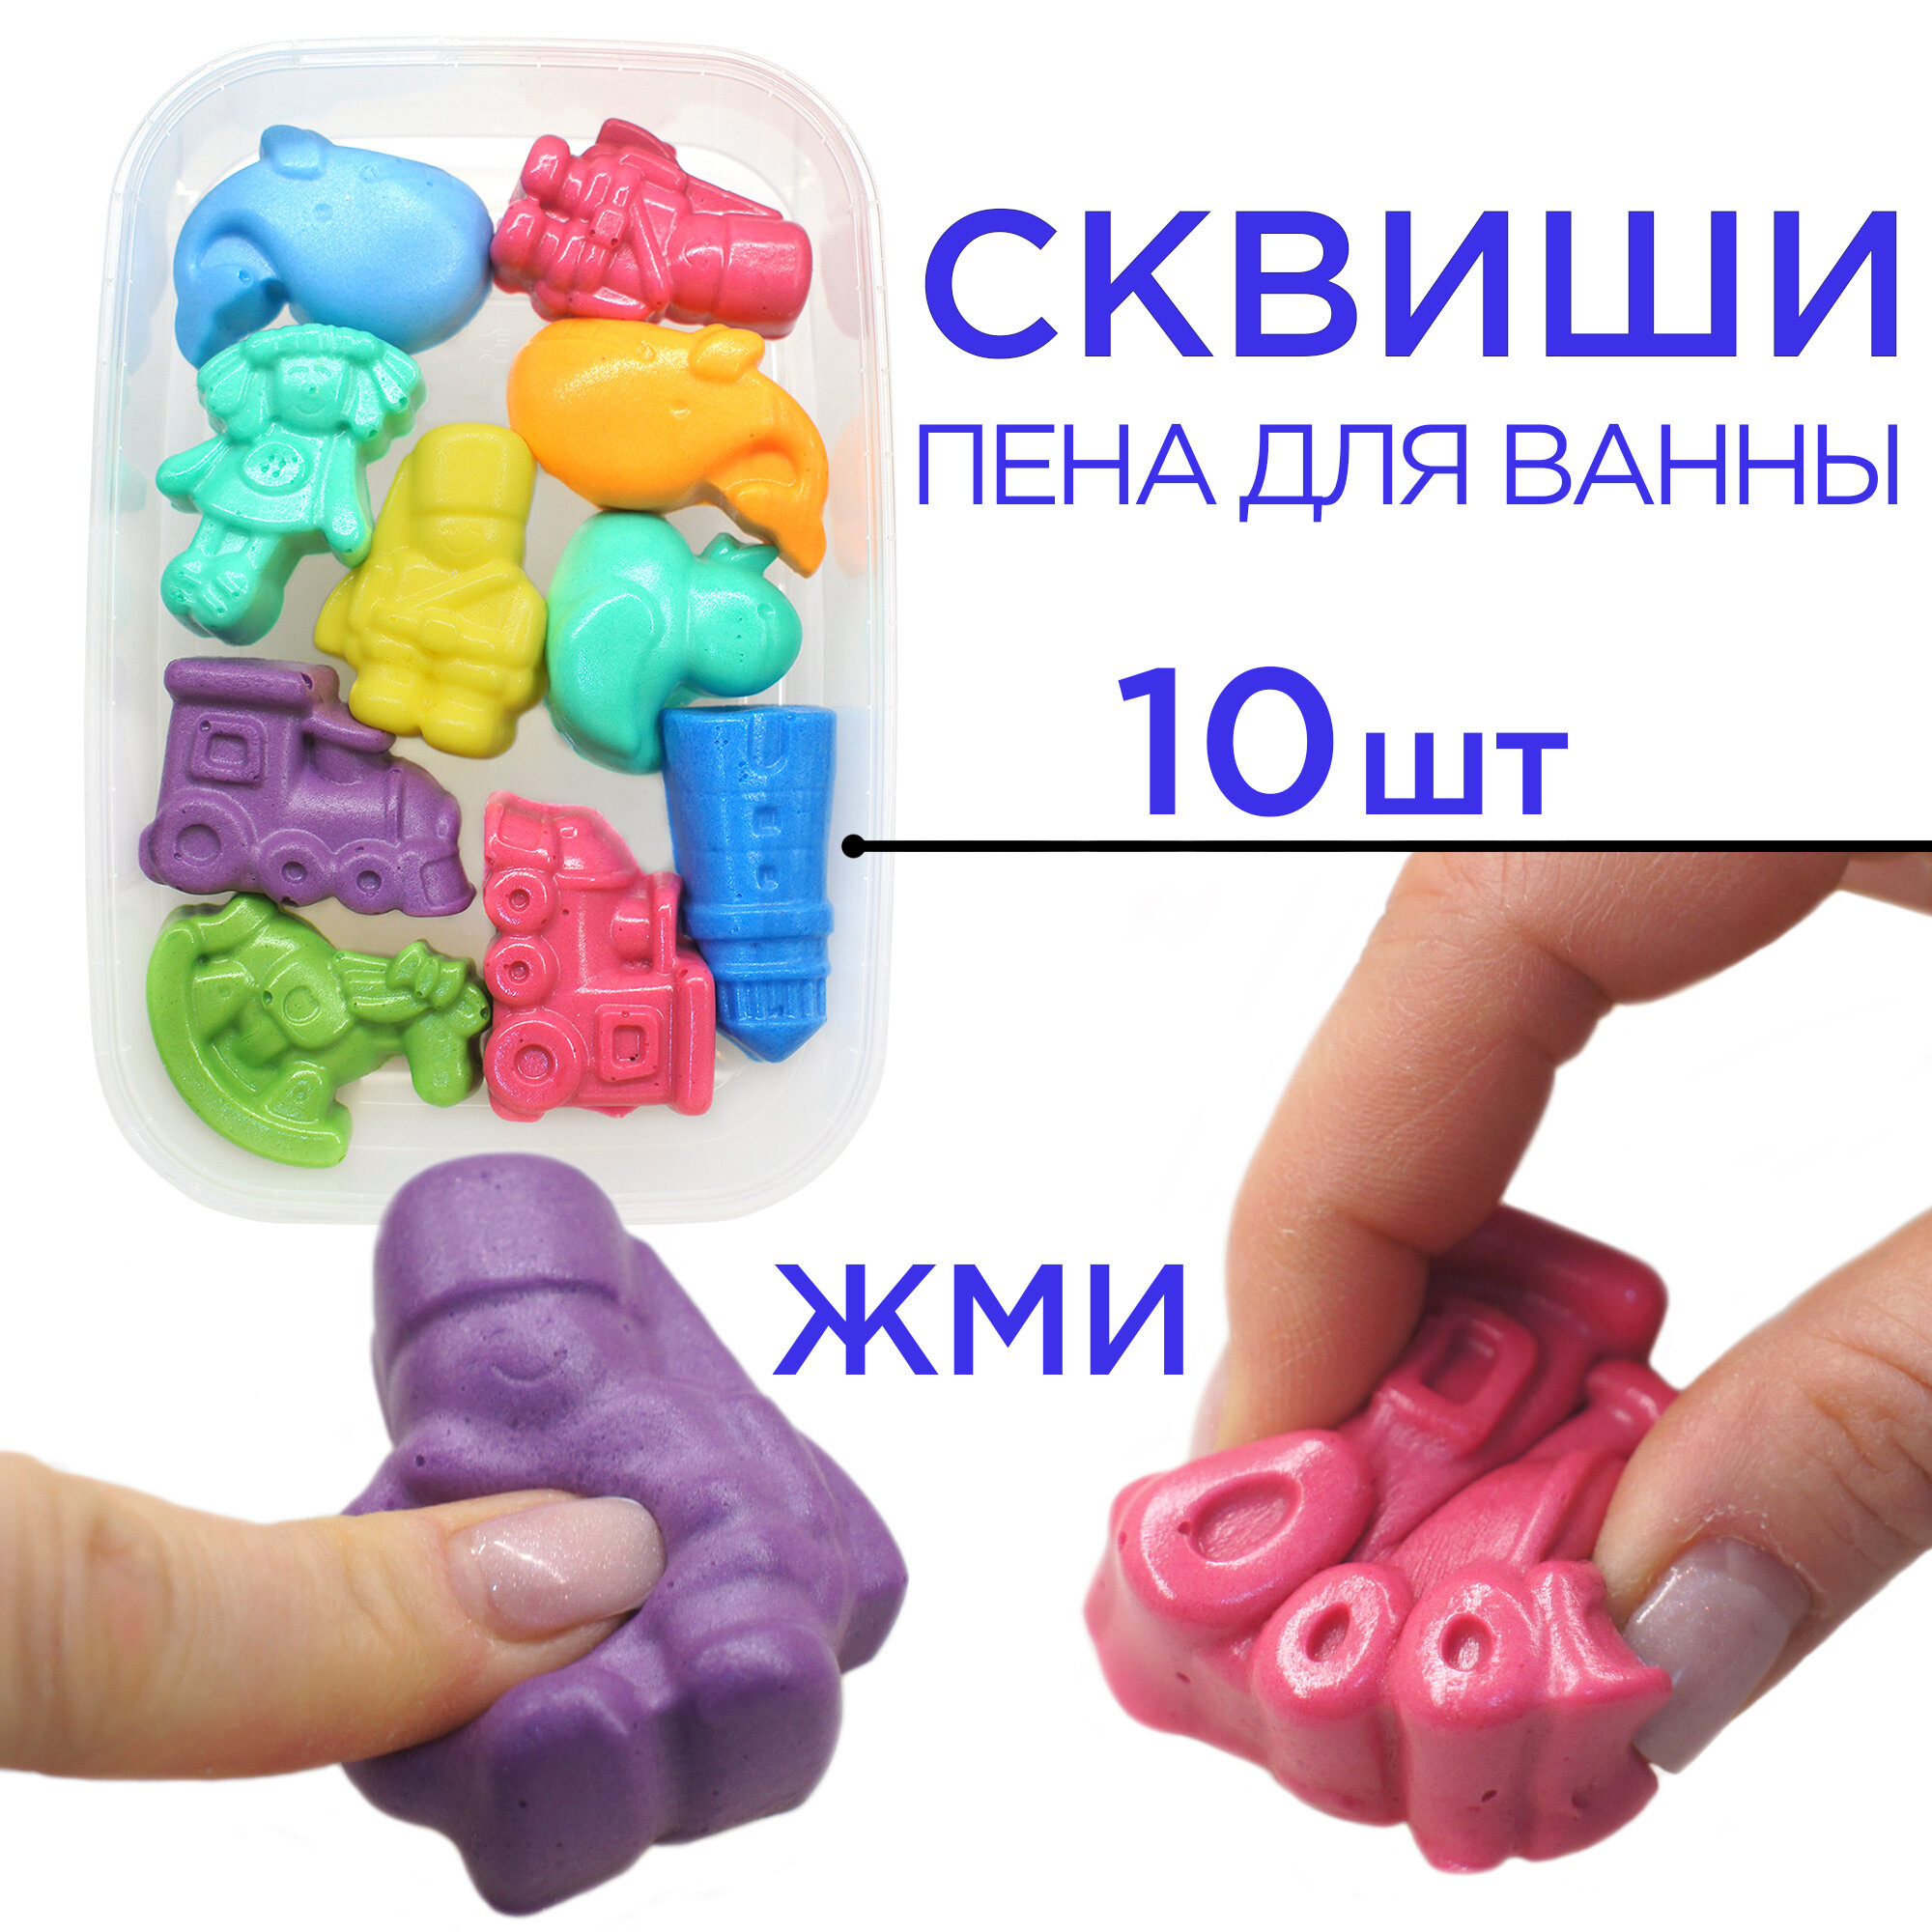 Пена для ванны и игрушка сквиши от Bubble squish / Набор 10 шт серия сказка/ мялка Бабл сквиш